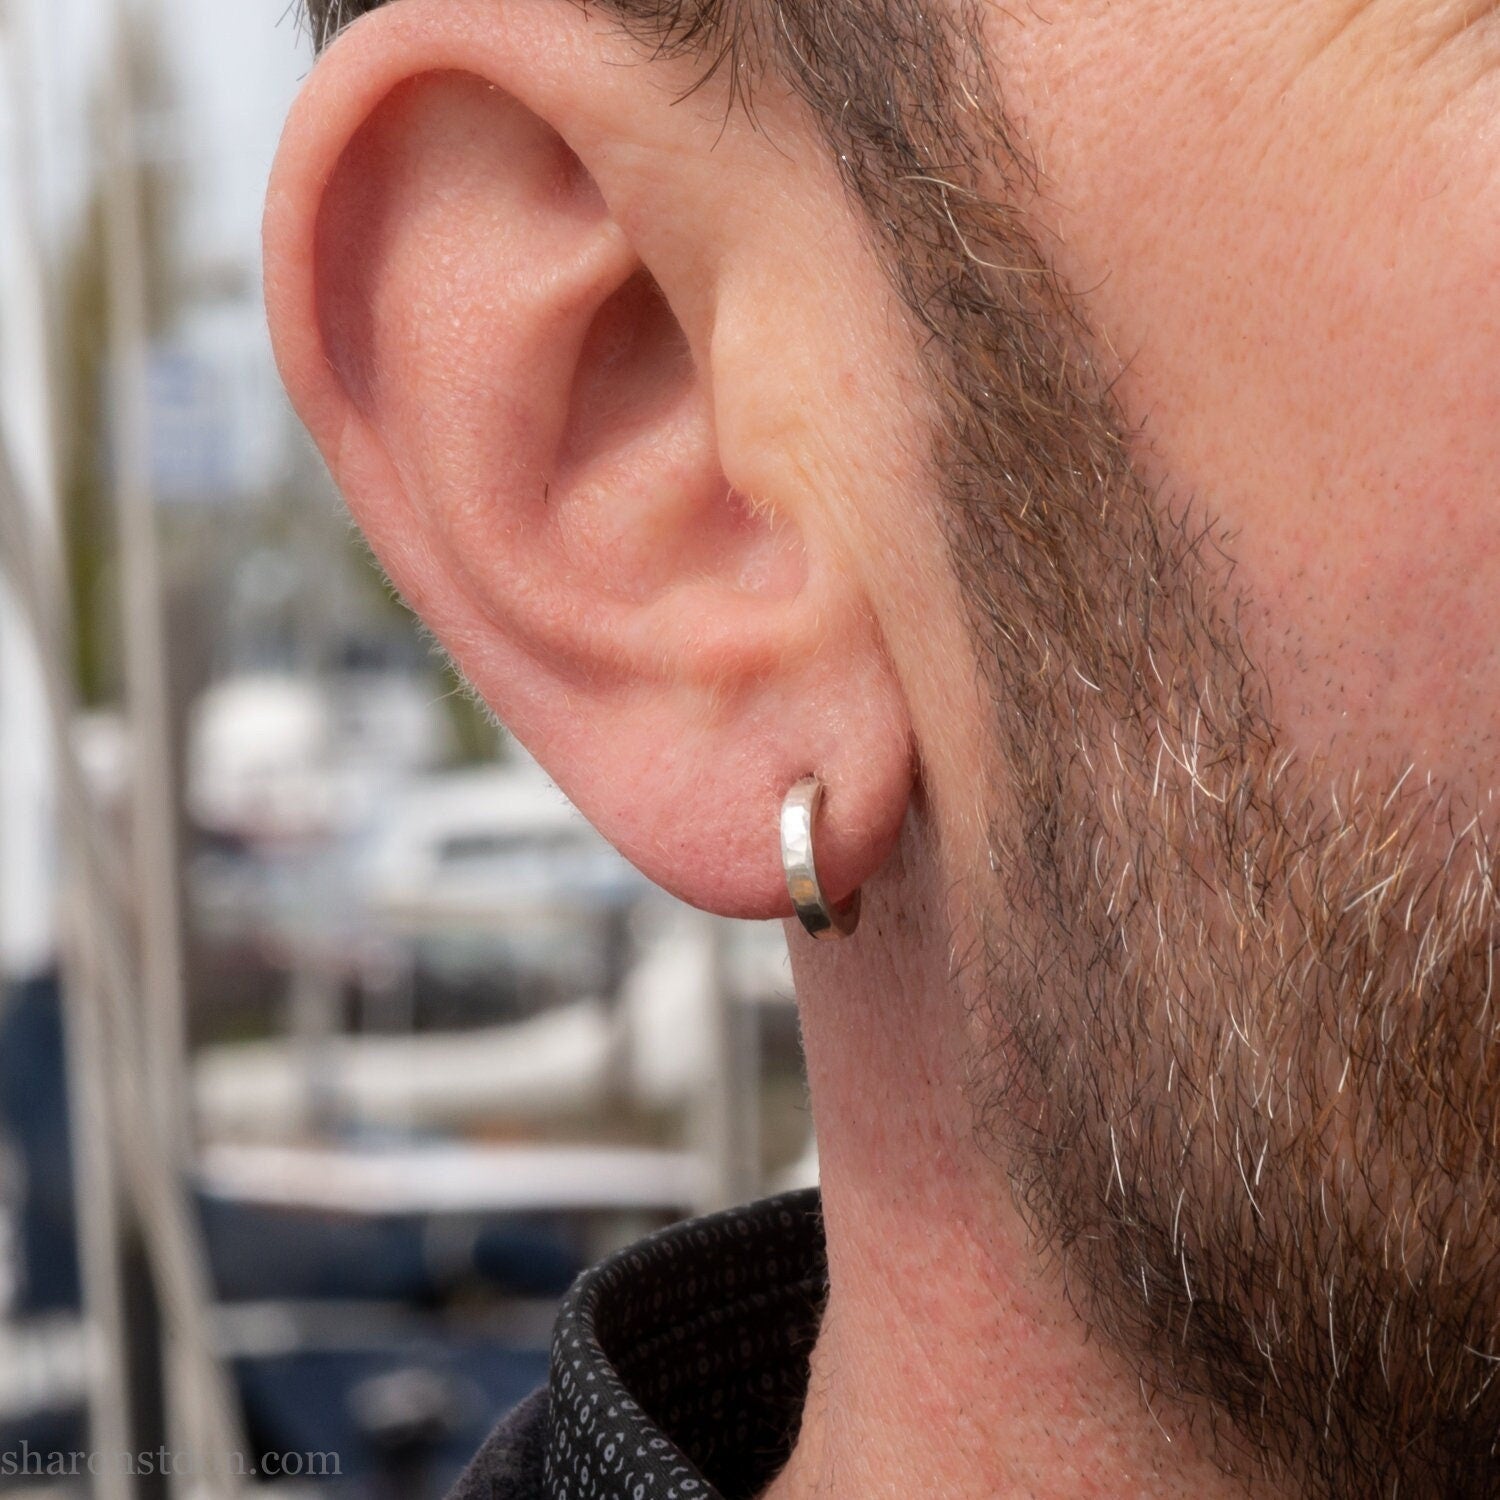 Promotion Mens Silver Stud Earrings White Diamond CZ Post - Etsy | Männer  ohrringe, Silber ohrstecker, Ohrringe